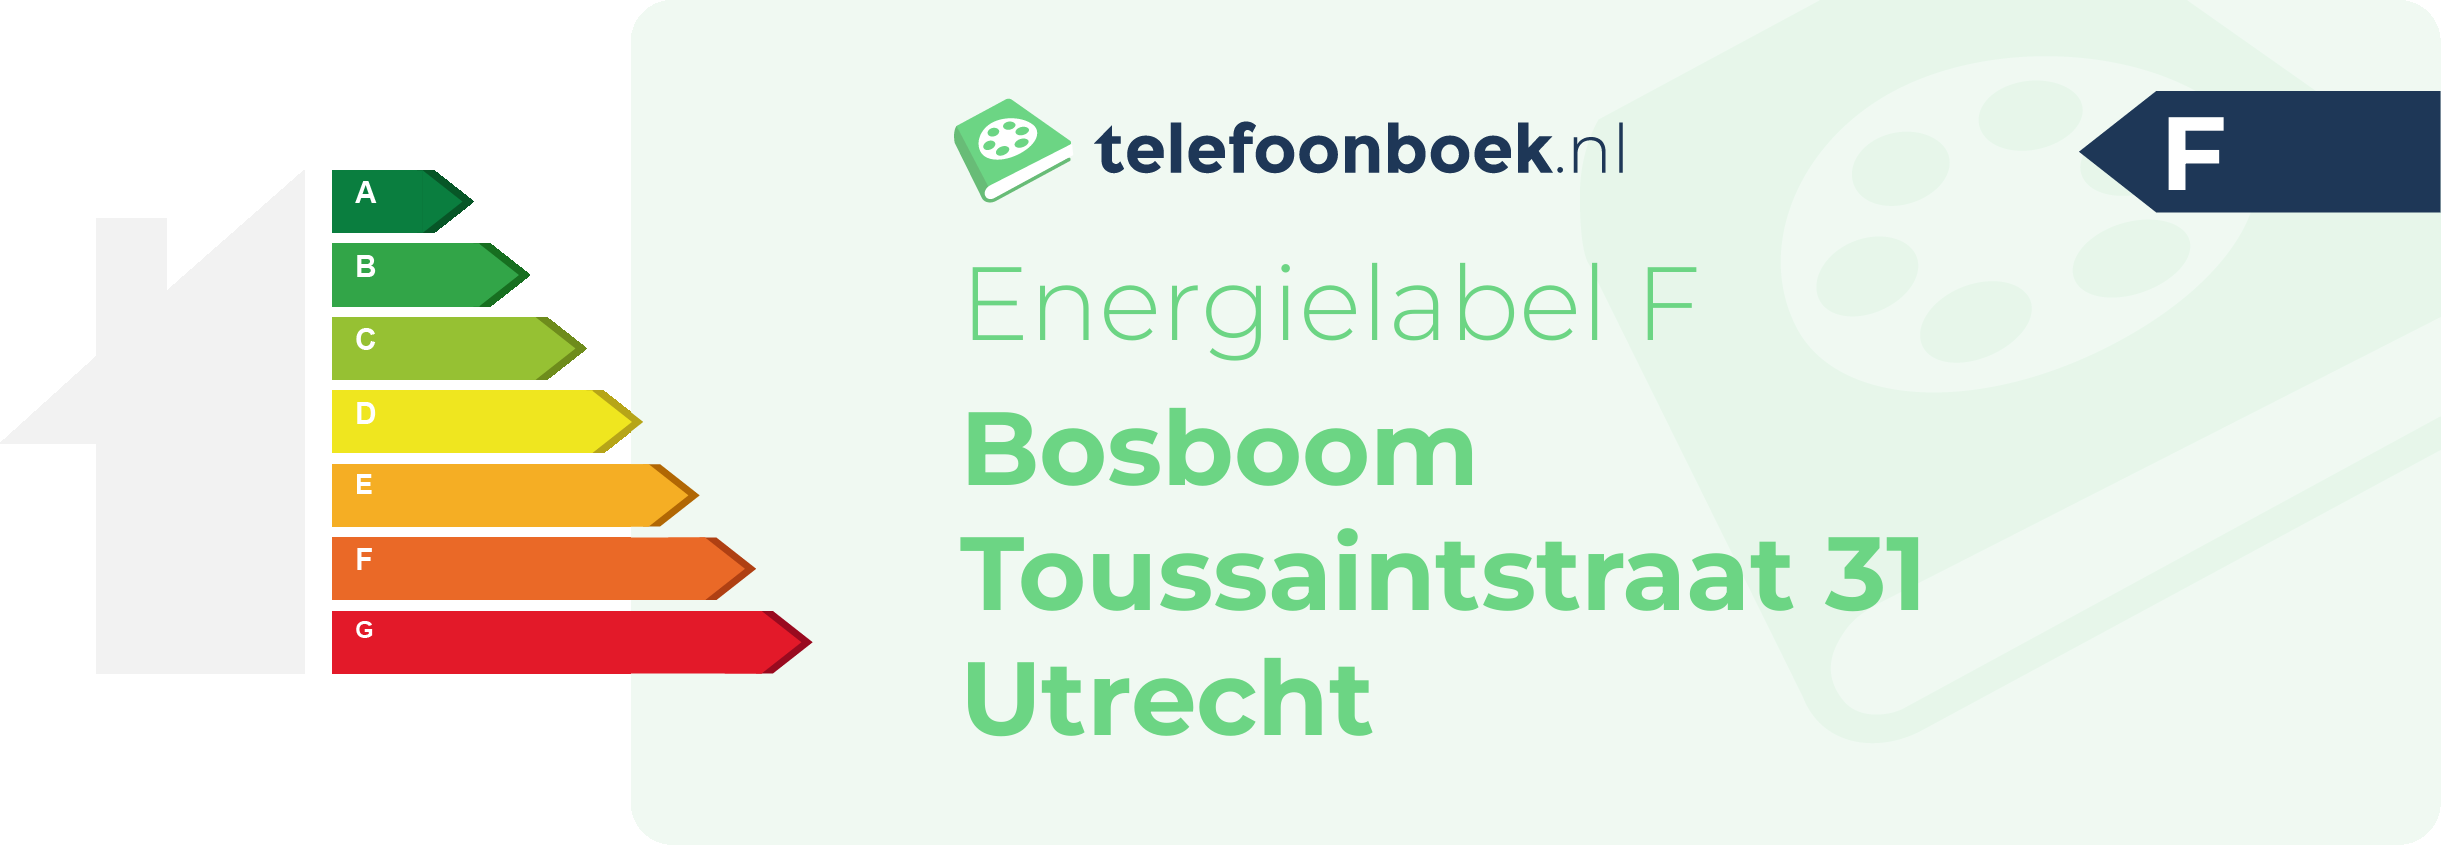 Energielabel Bosboom Toussaintstraat 31 Utrecht